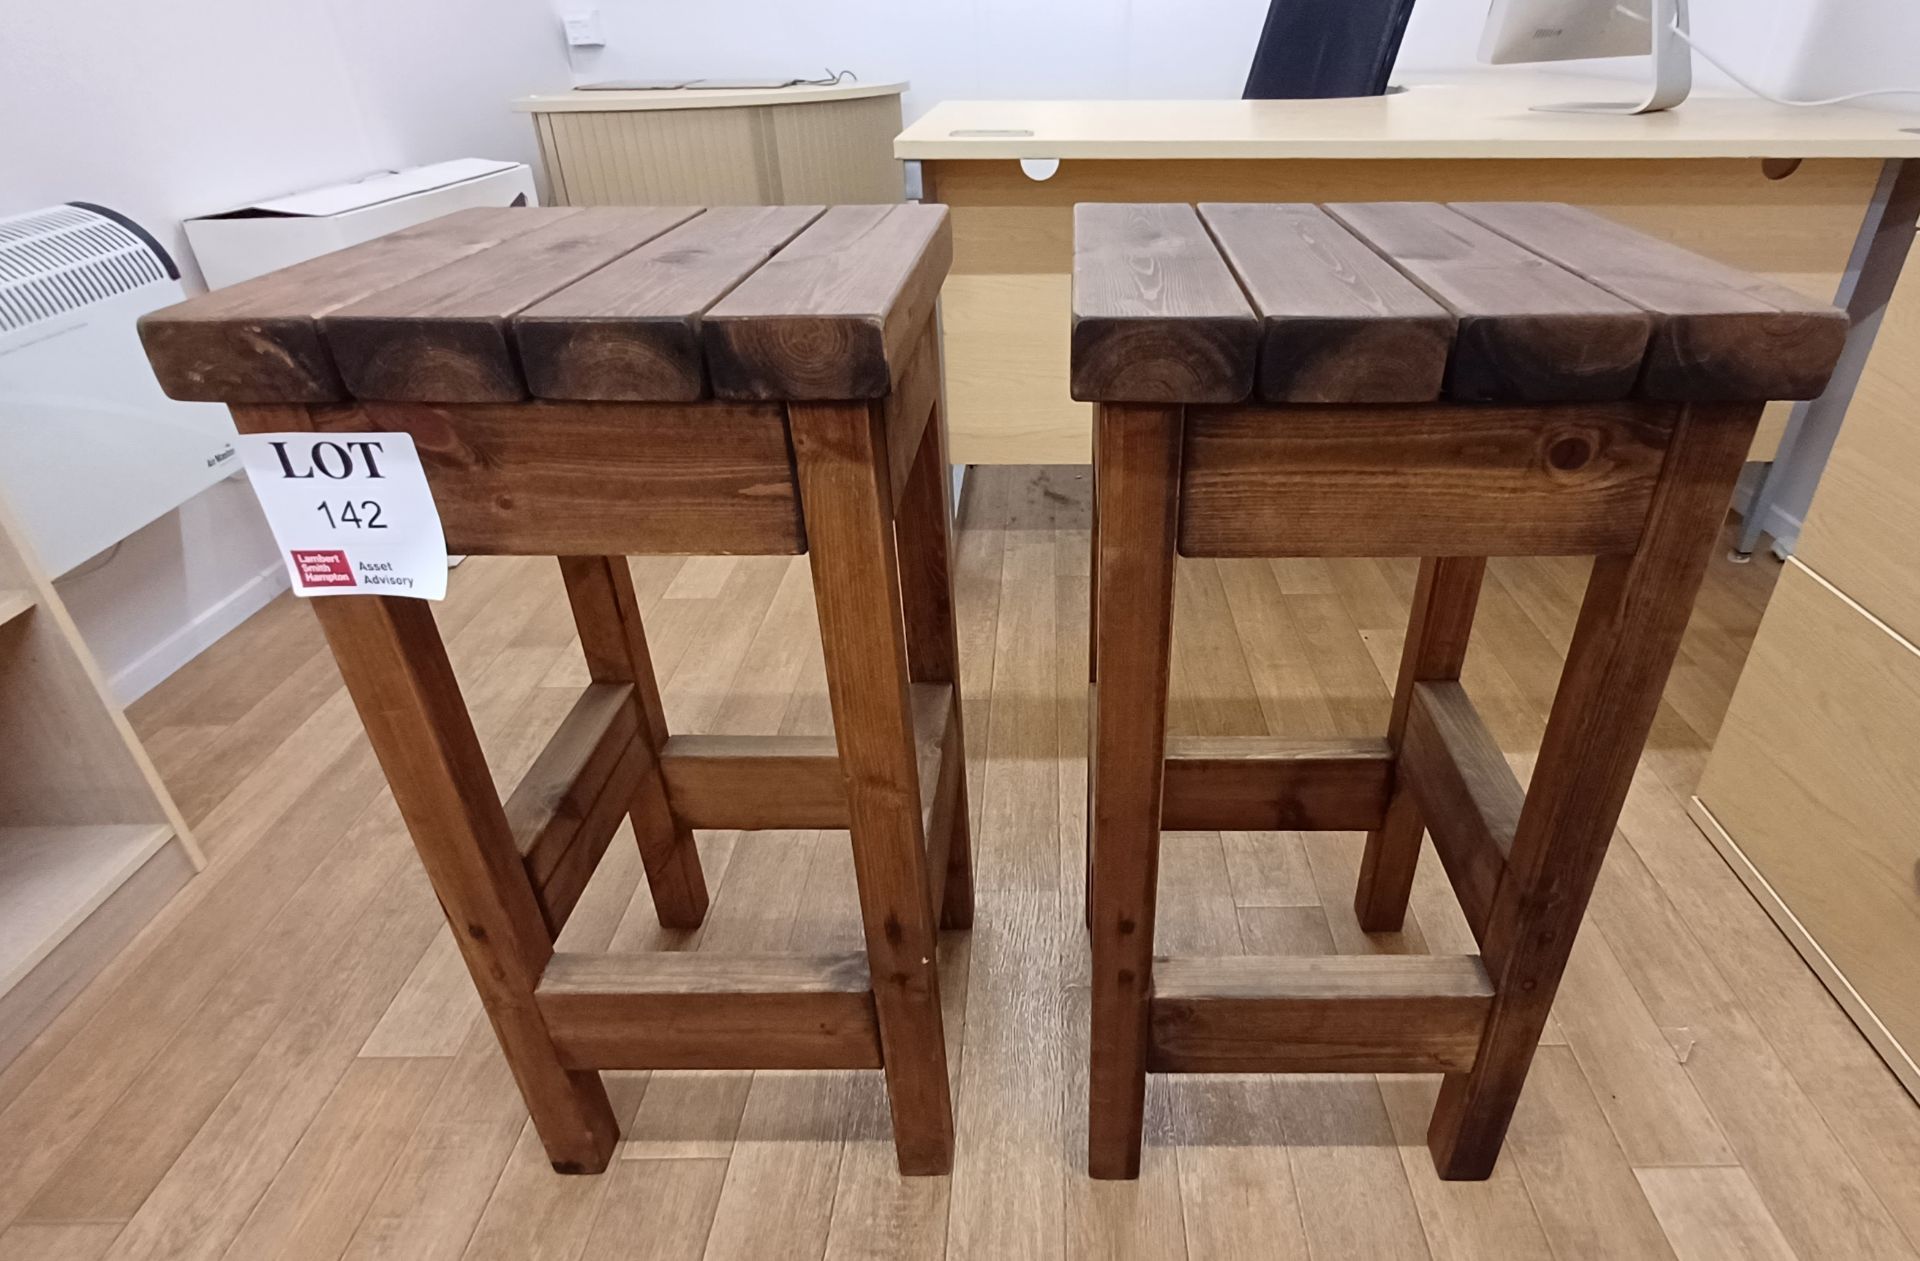 2 x Timber bar stools